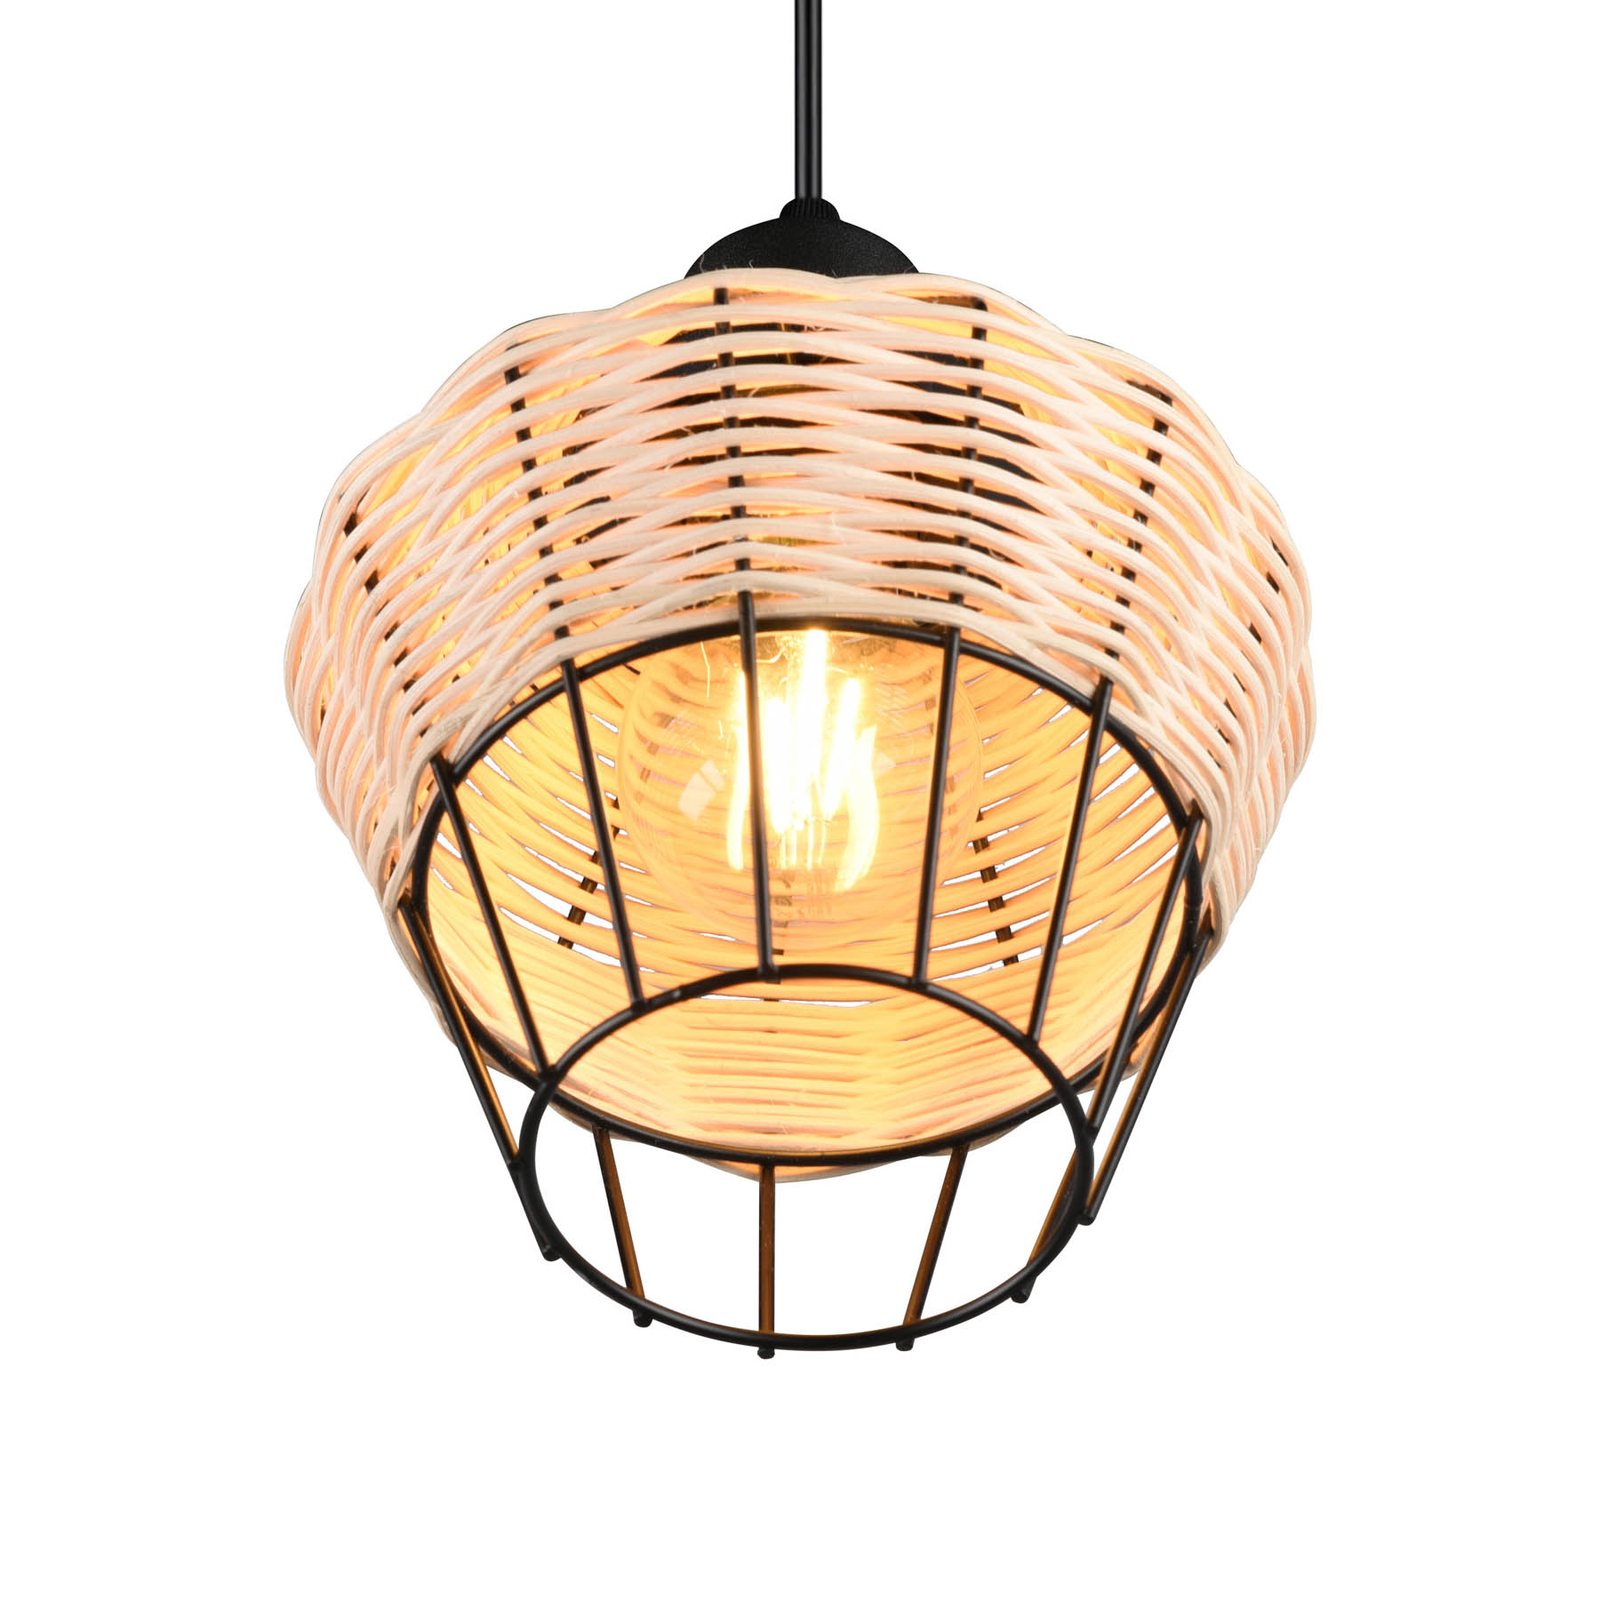 Borka hanglamp, 1-lamp, Ø 17,5 cm, Natur